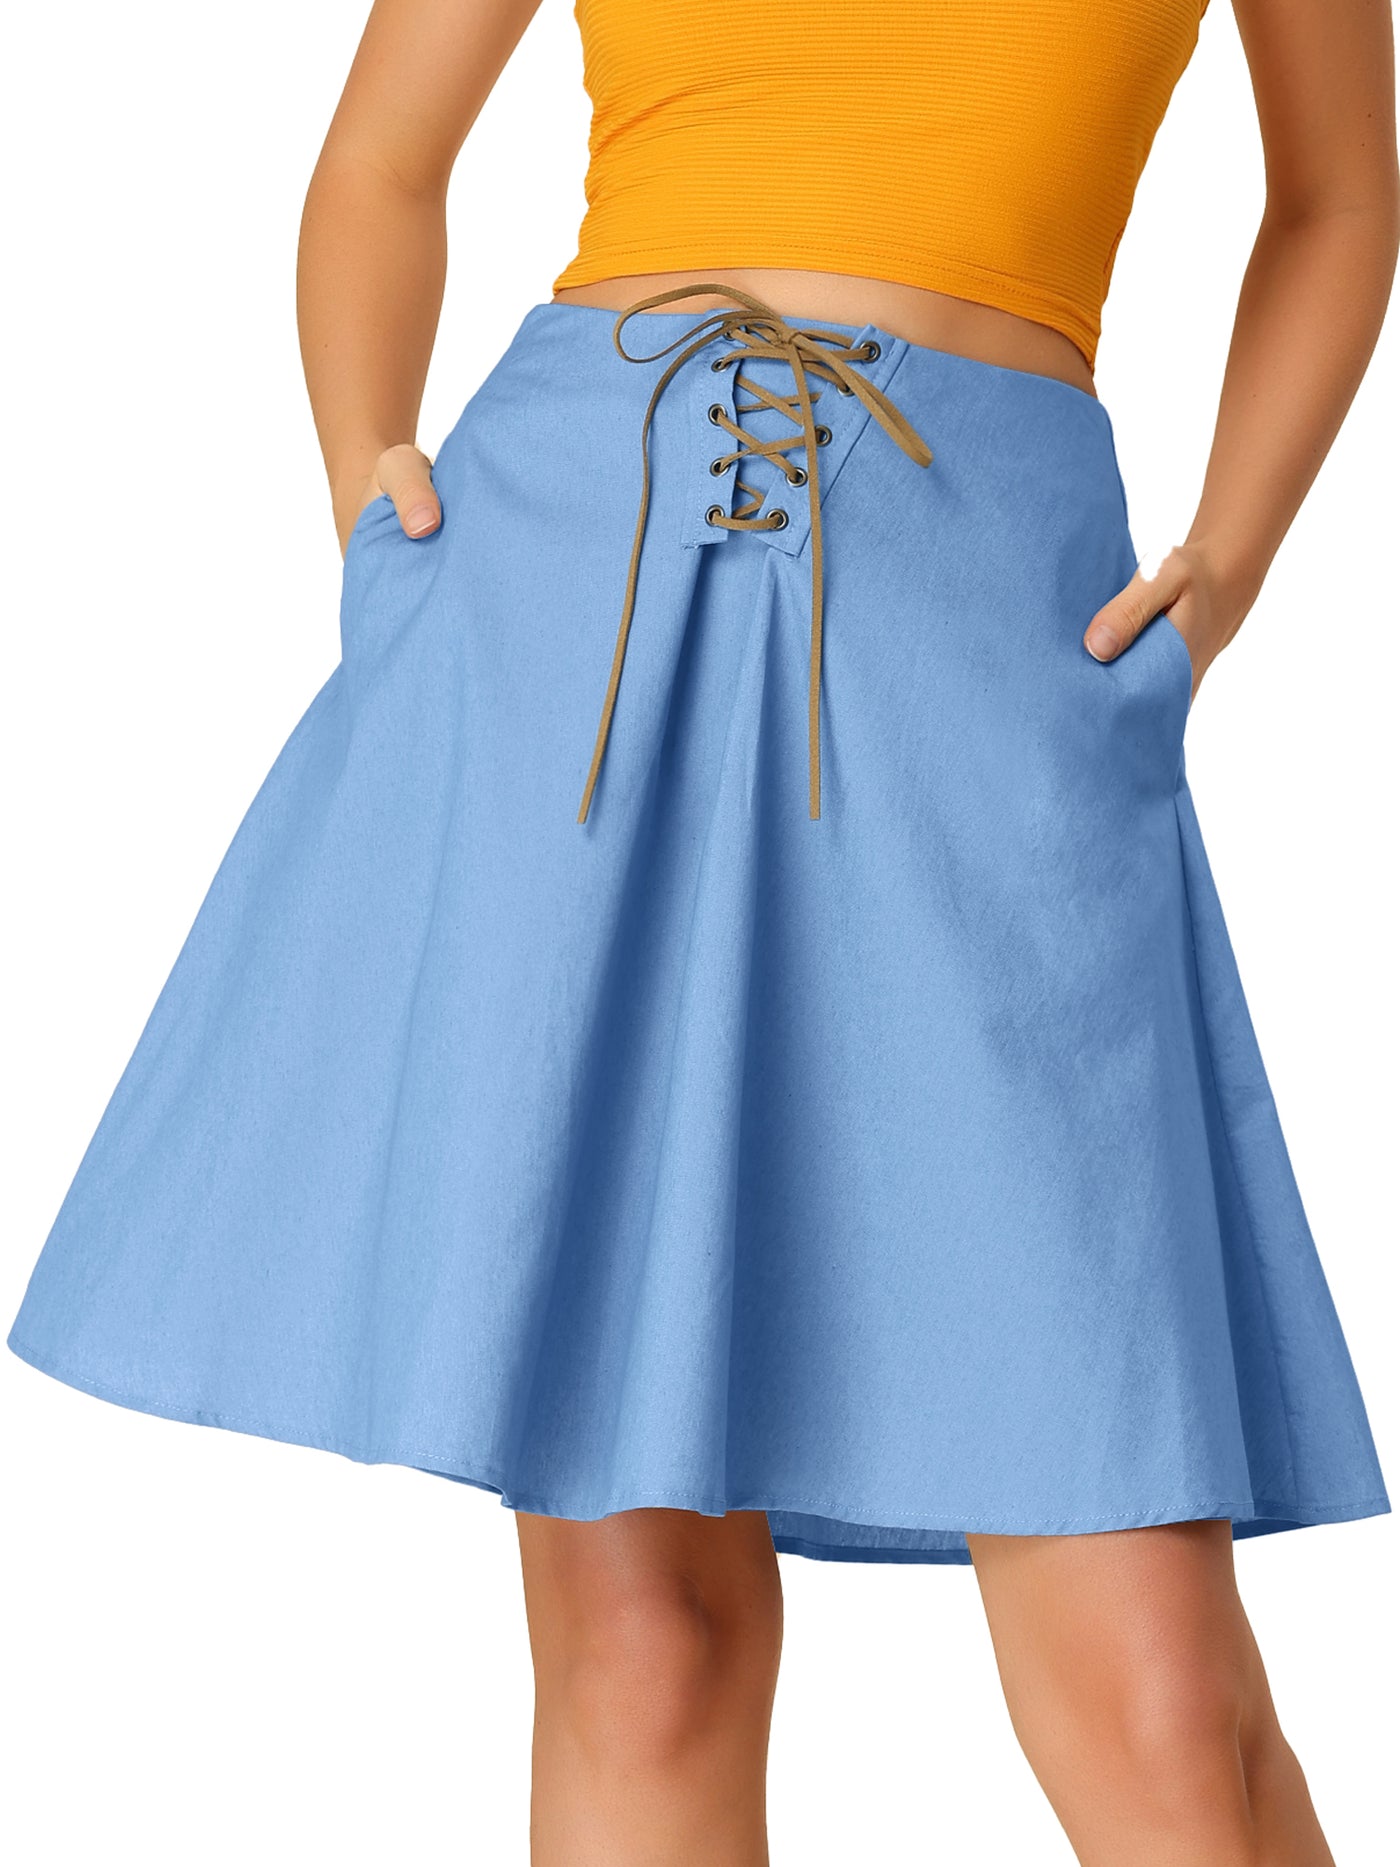 Allegra K Jean Denim Skirt for Women's Lace Up Chambray Knee Length Skirts